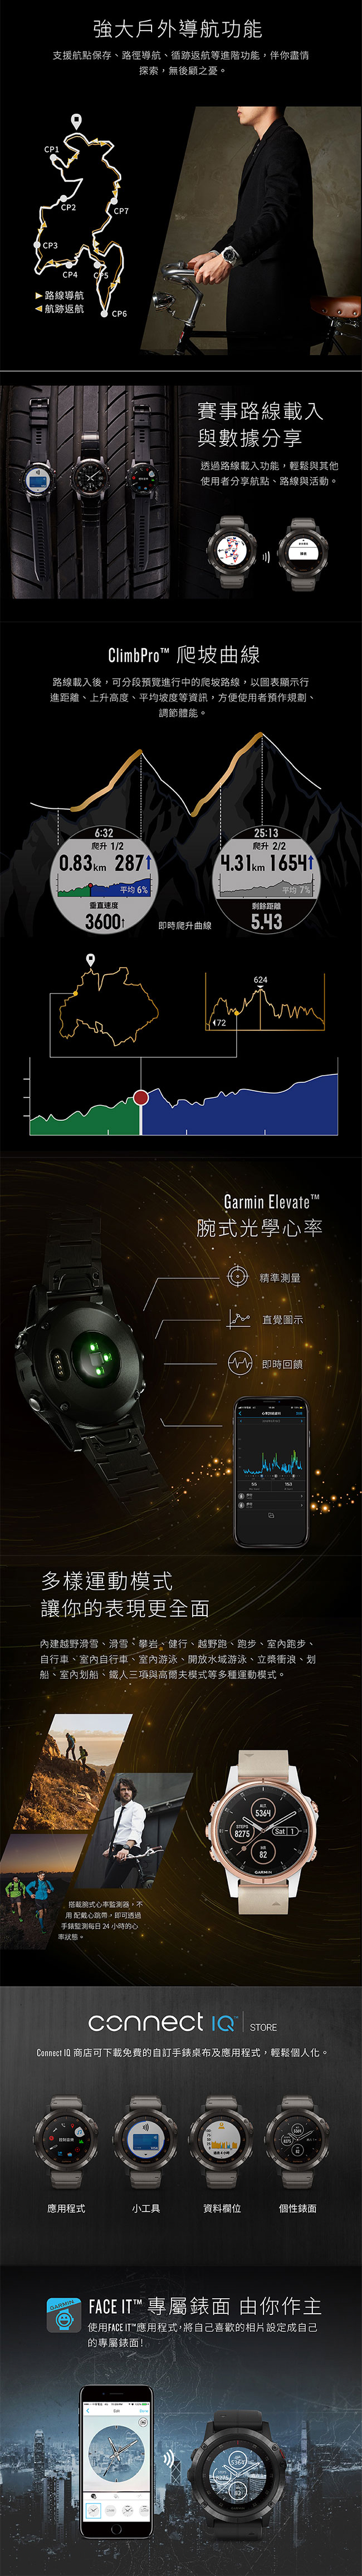 GARMIN fenix 5S Plus 行動支付音樂GPS複合式心率腕錶